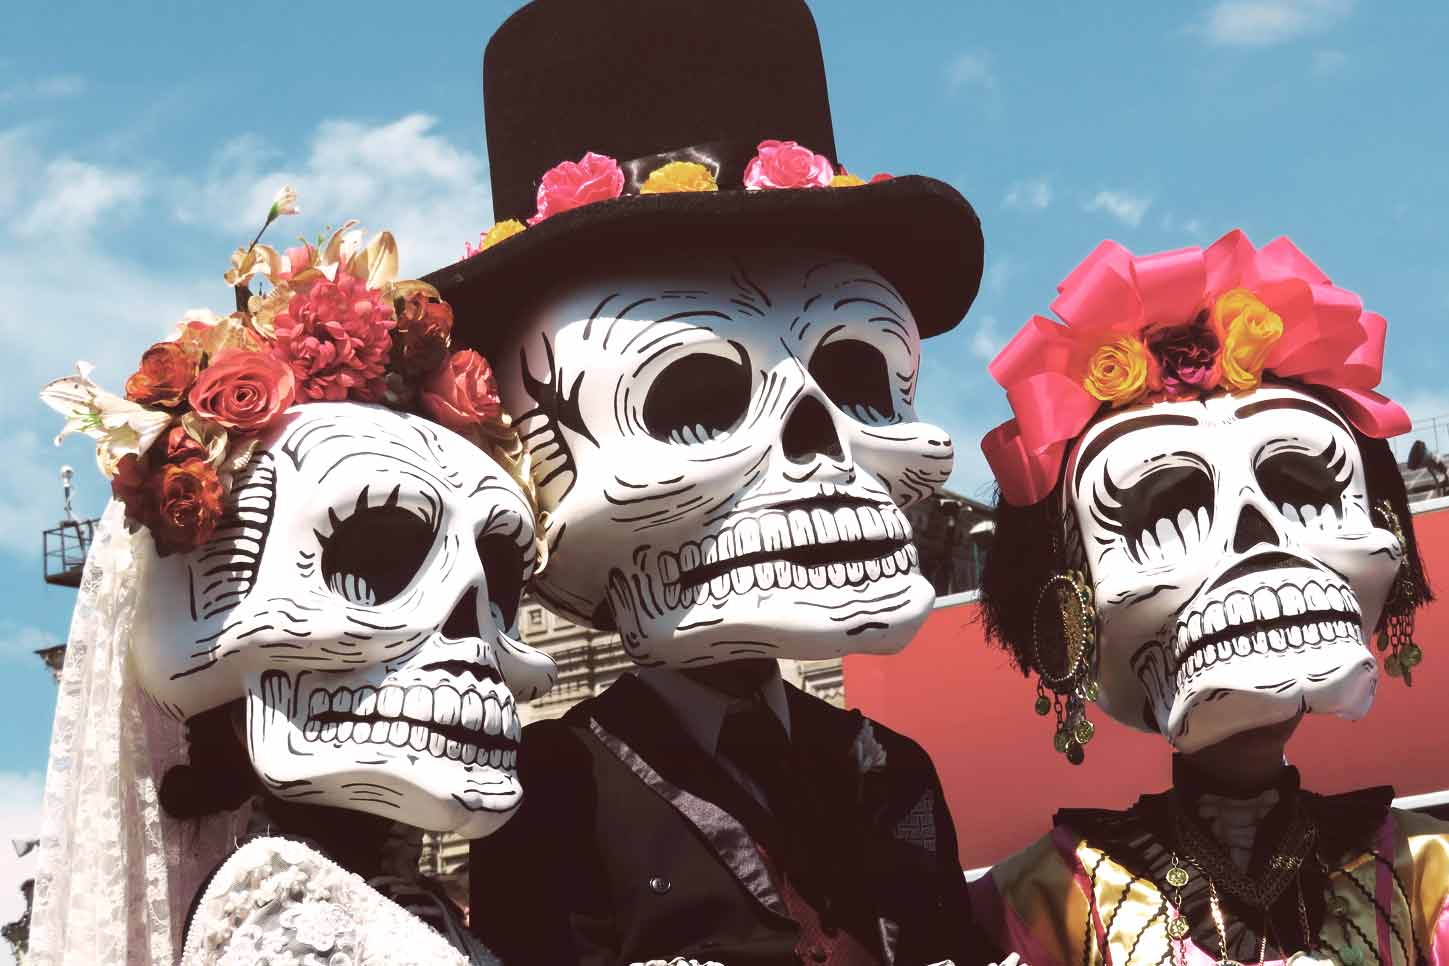 Cultura mexicana: tradiciones y costumbres de México